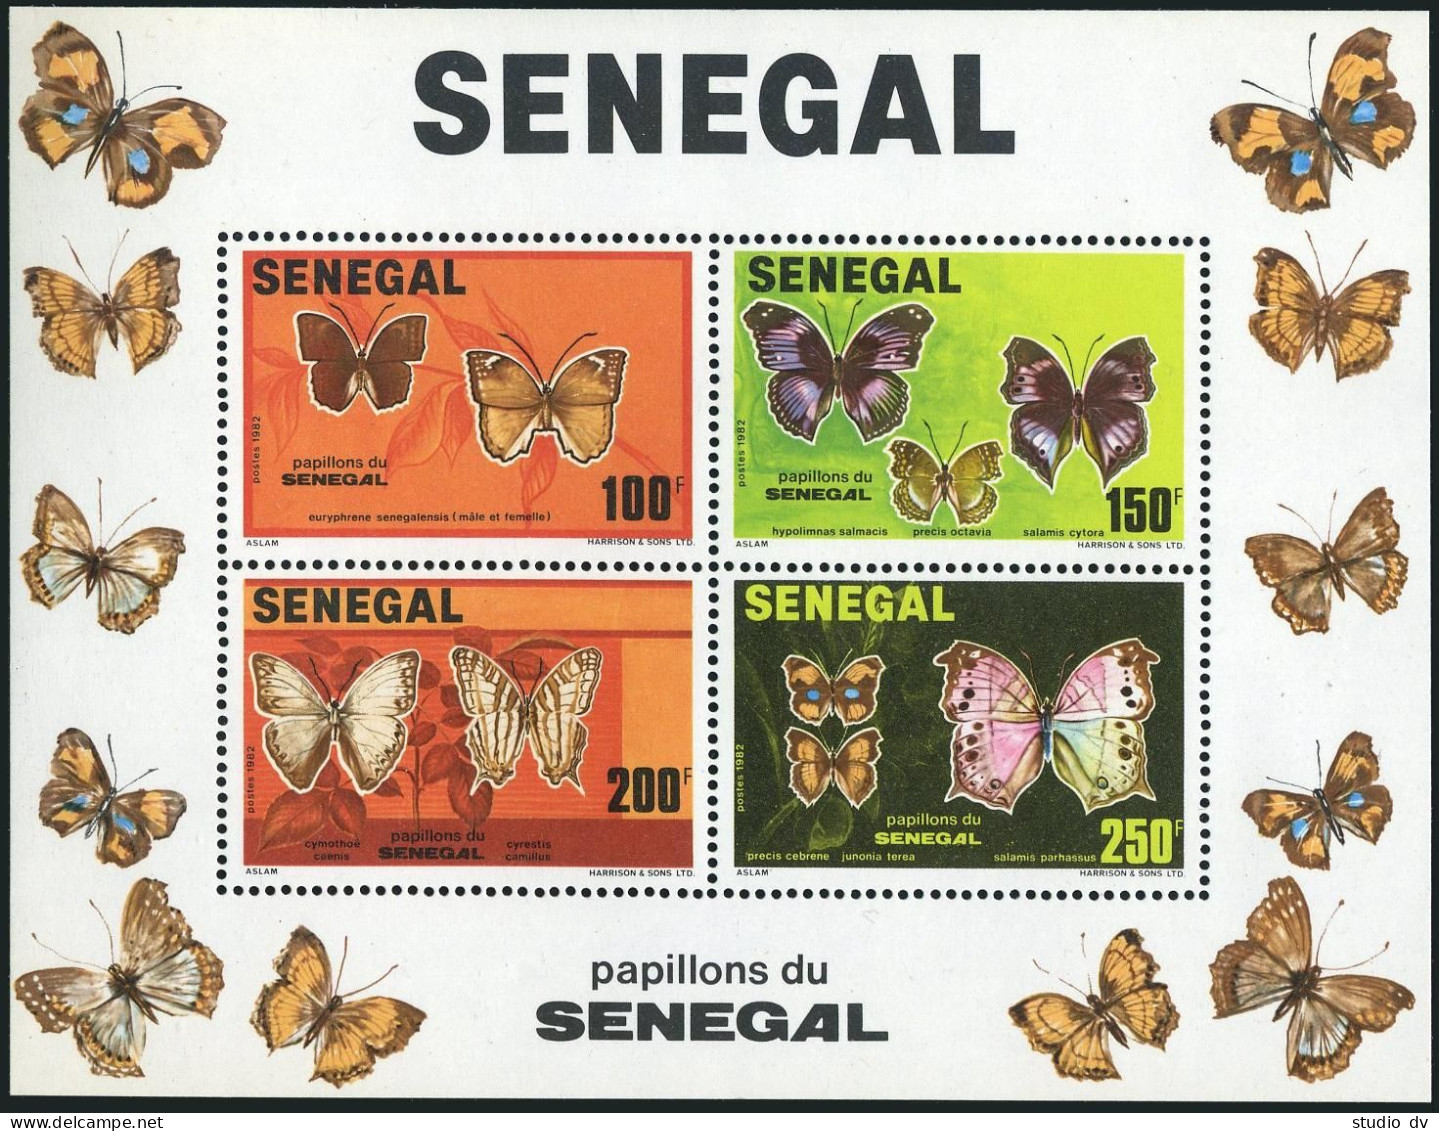 Senegal 559 Ad Sheet,MNH.Michel 763-766 Bl.41. Butterflies 1982. - Sénégal (1960-...)